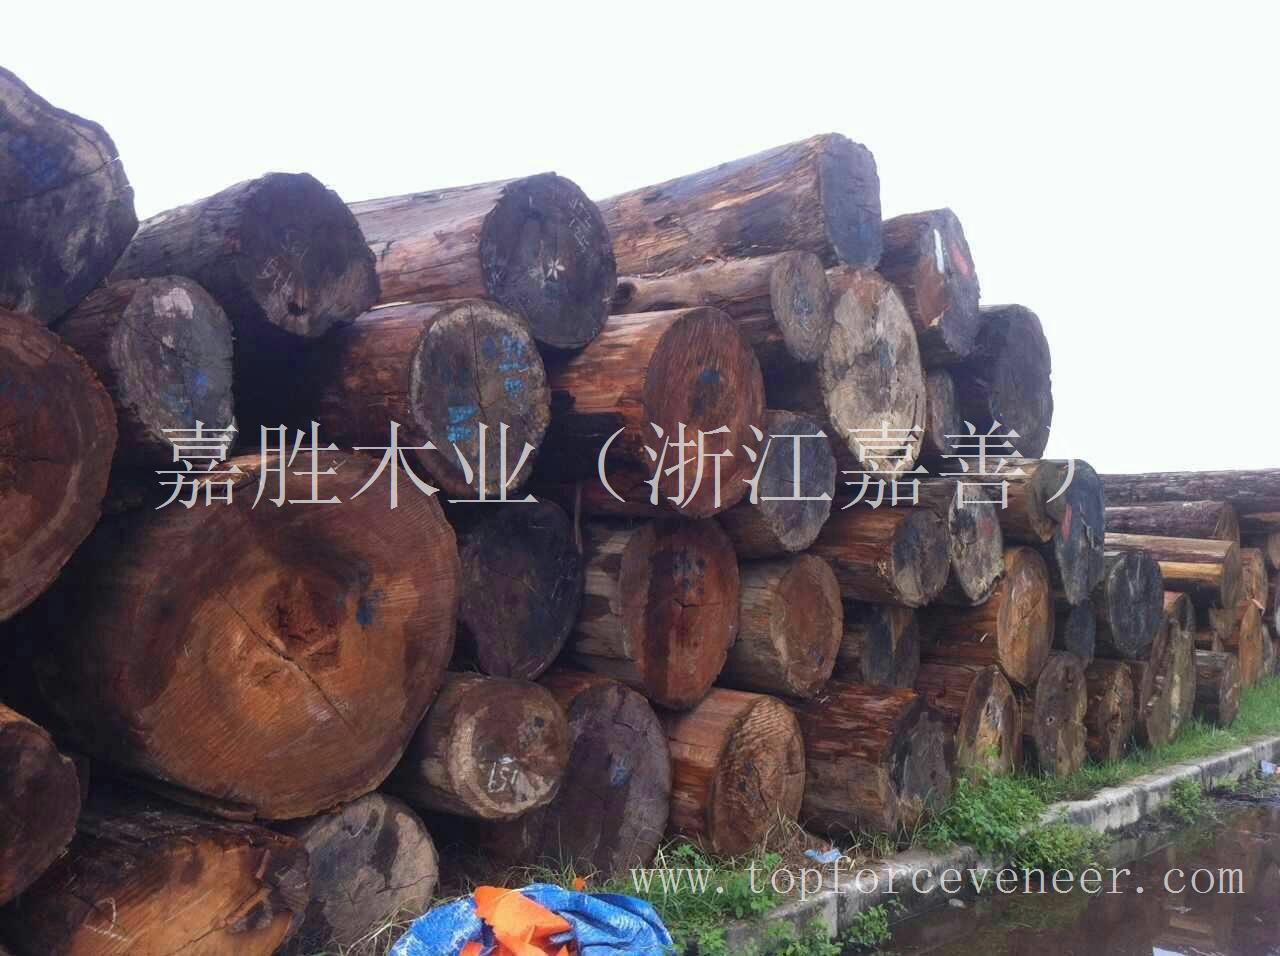 亚洲东南亚越南桧木 Vietnam Cypress Logs (Hinoki)